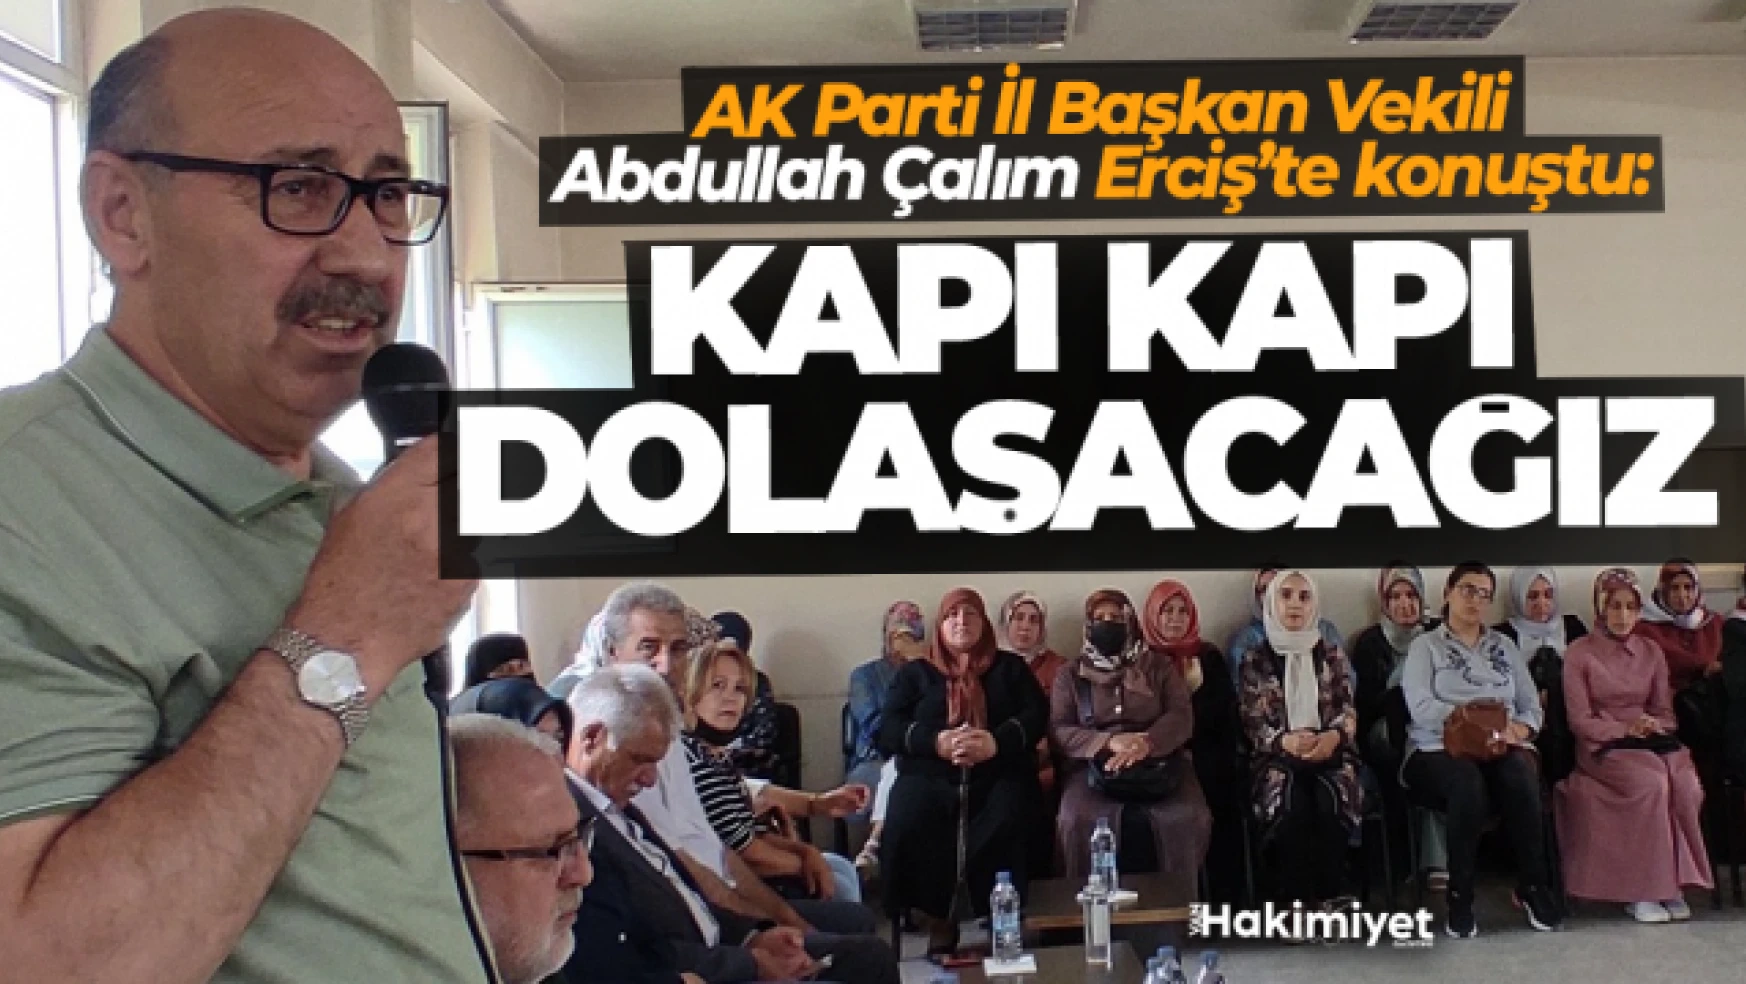 AK Parti Van İl Başkanlığı Erciş'e çıkarma yaptı